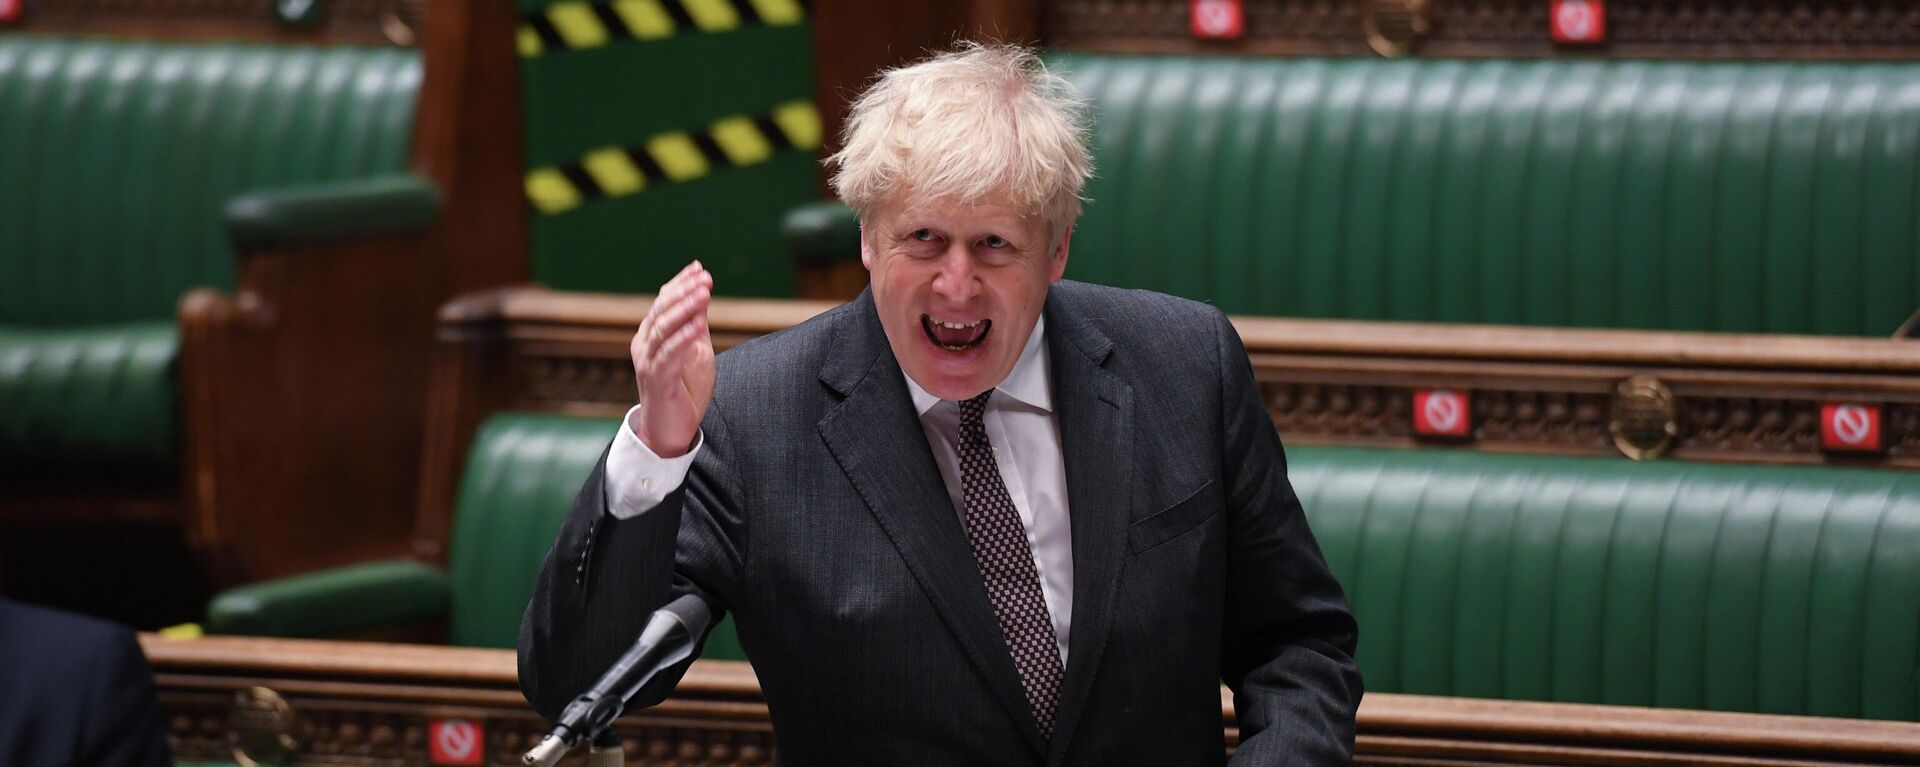 Boris Johnson, el jefe del Gobierno del Reino Unido - Sputnik Mundo, 1920, 21.04.2021